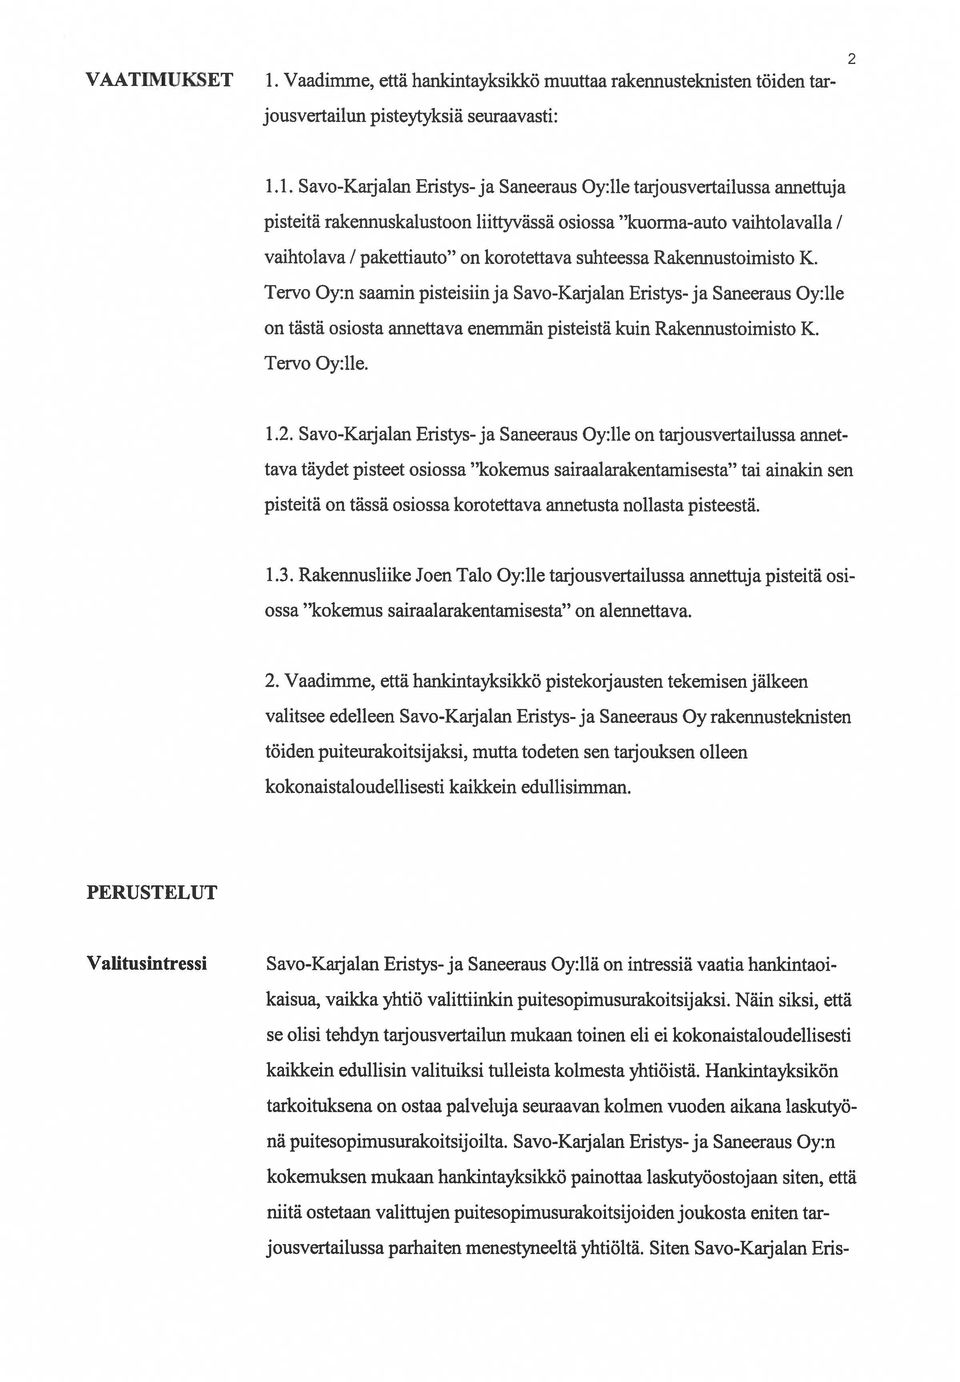 1. Savo-Karjalan Eristys- ja Saneeraus Oy:lle taijousvertailussa annettuja pisteitä rakennuskalustoon liittyvässä osiossa kuorma-auto vaihtolavalla / vaihtolava / pakettiauto on korotettava suhteessa